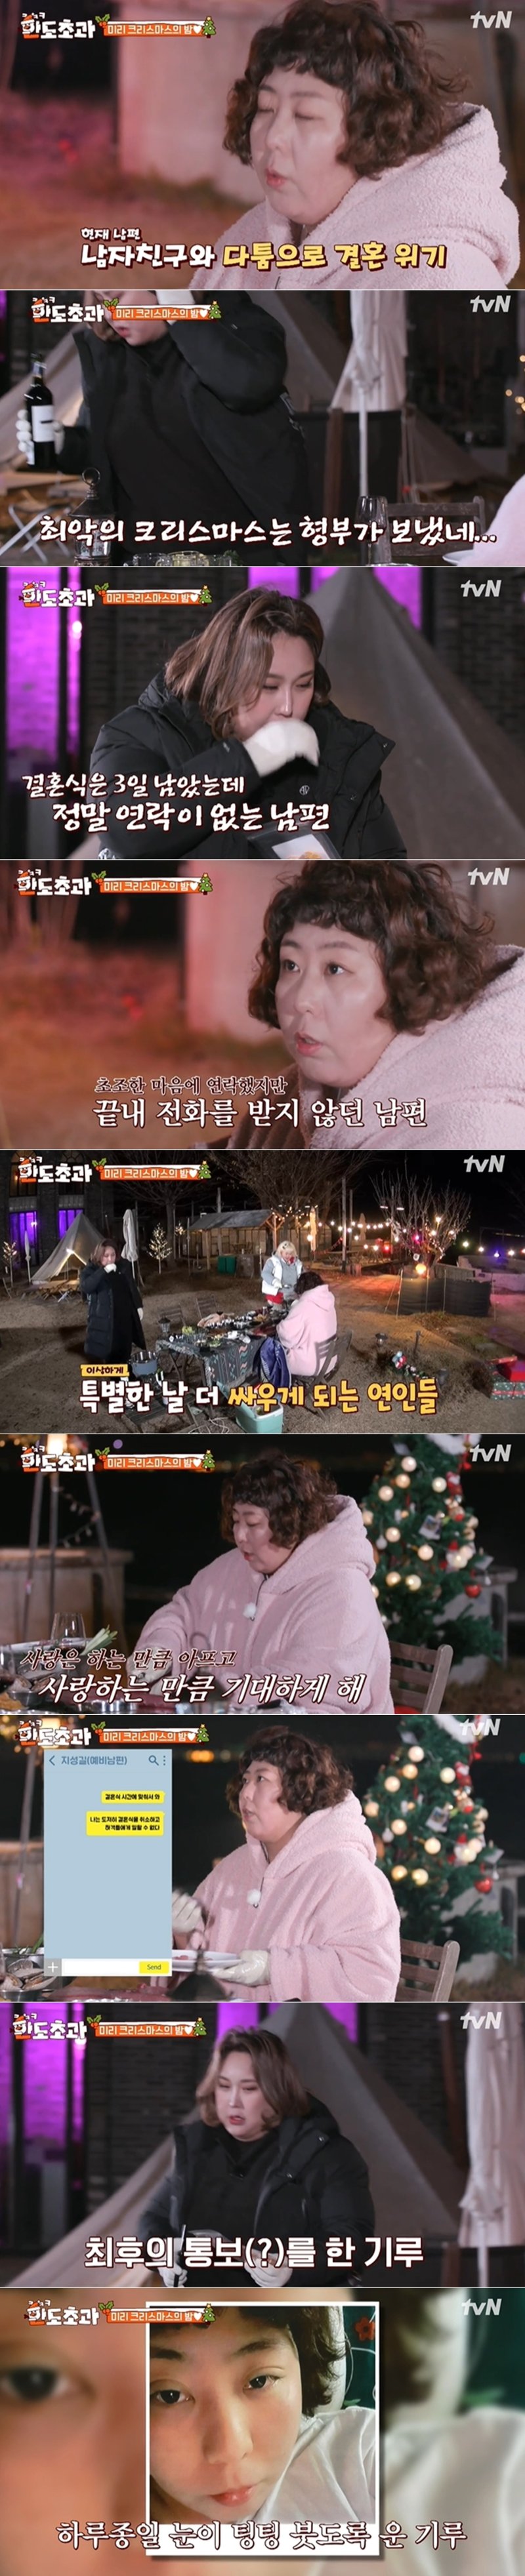 tvN '한도초과' 방송 화면 갈무리